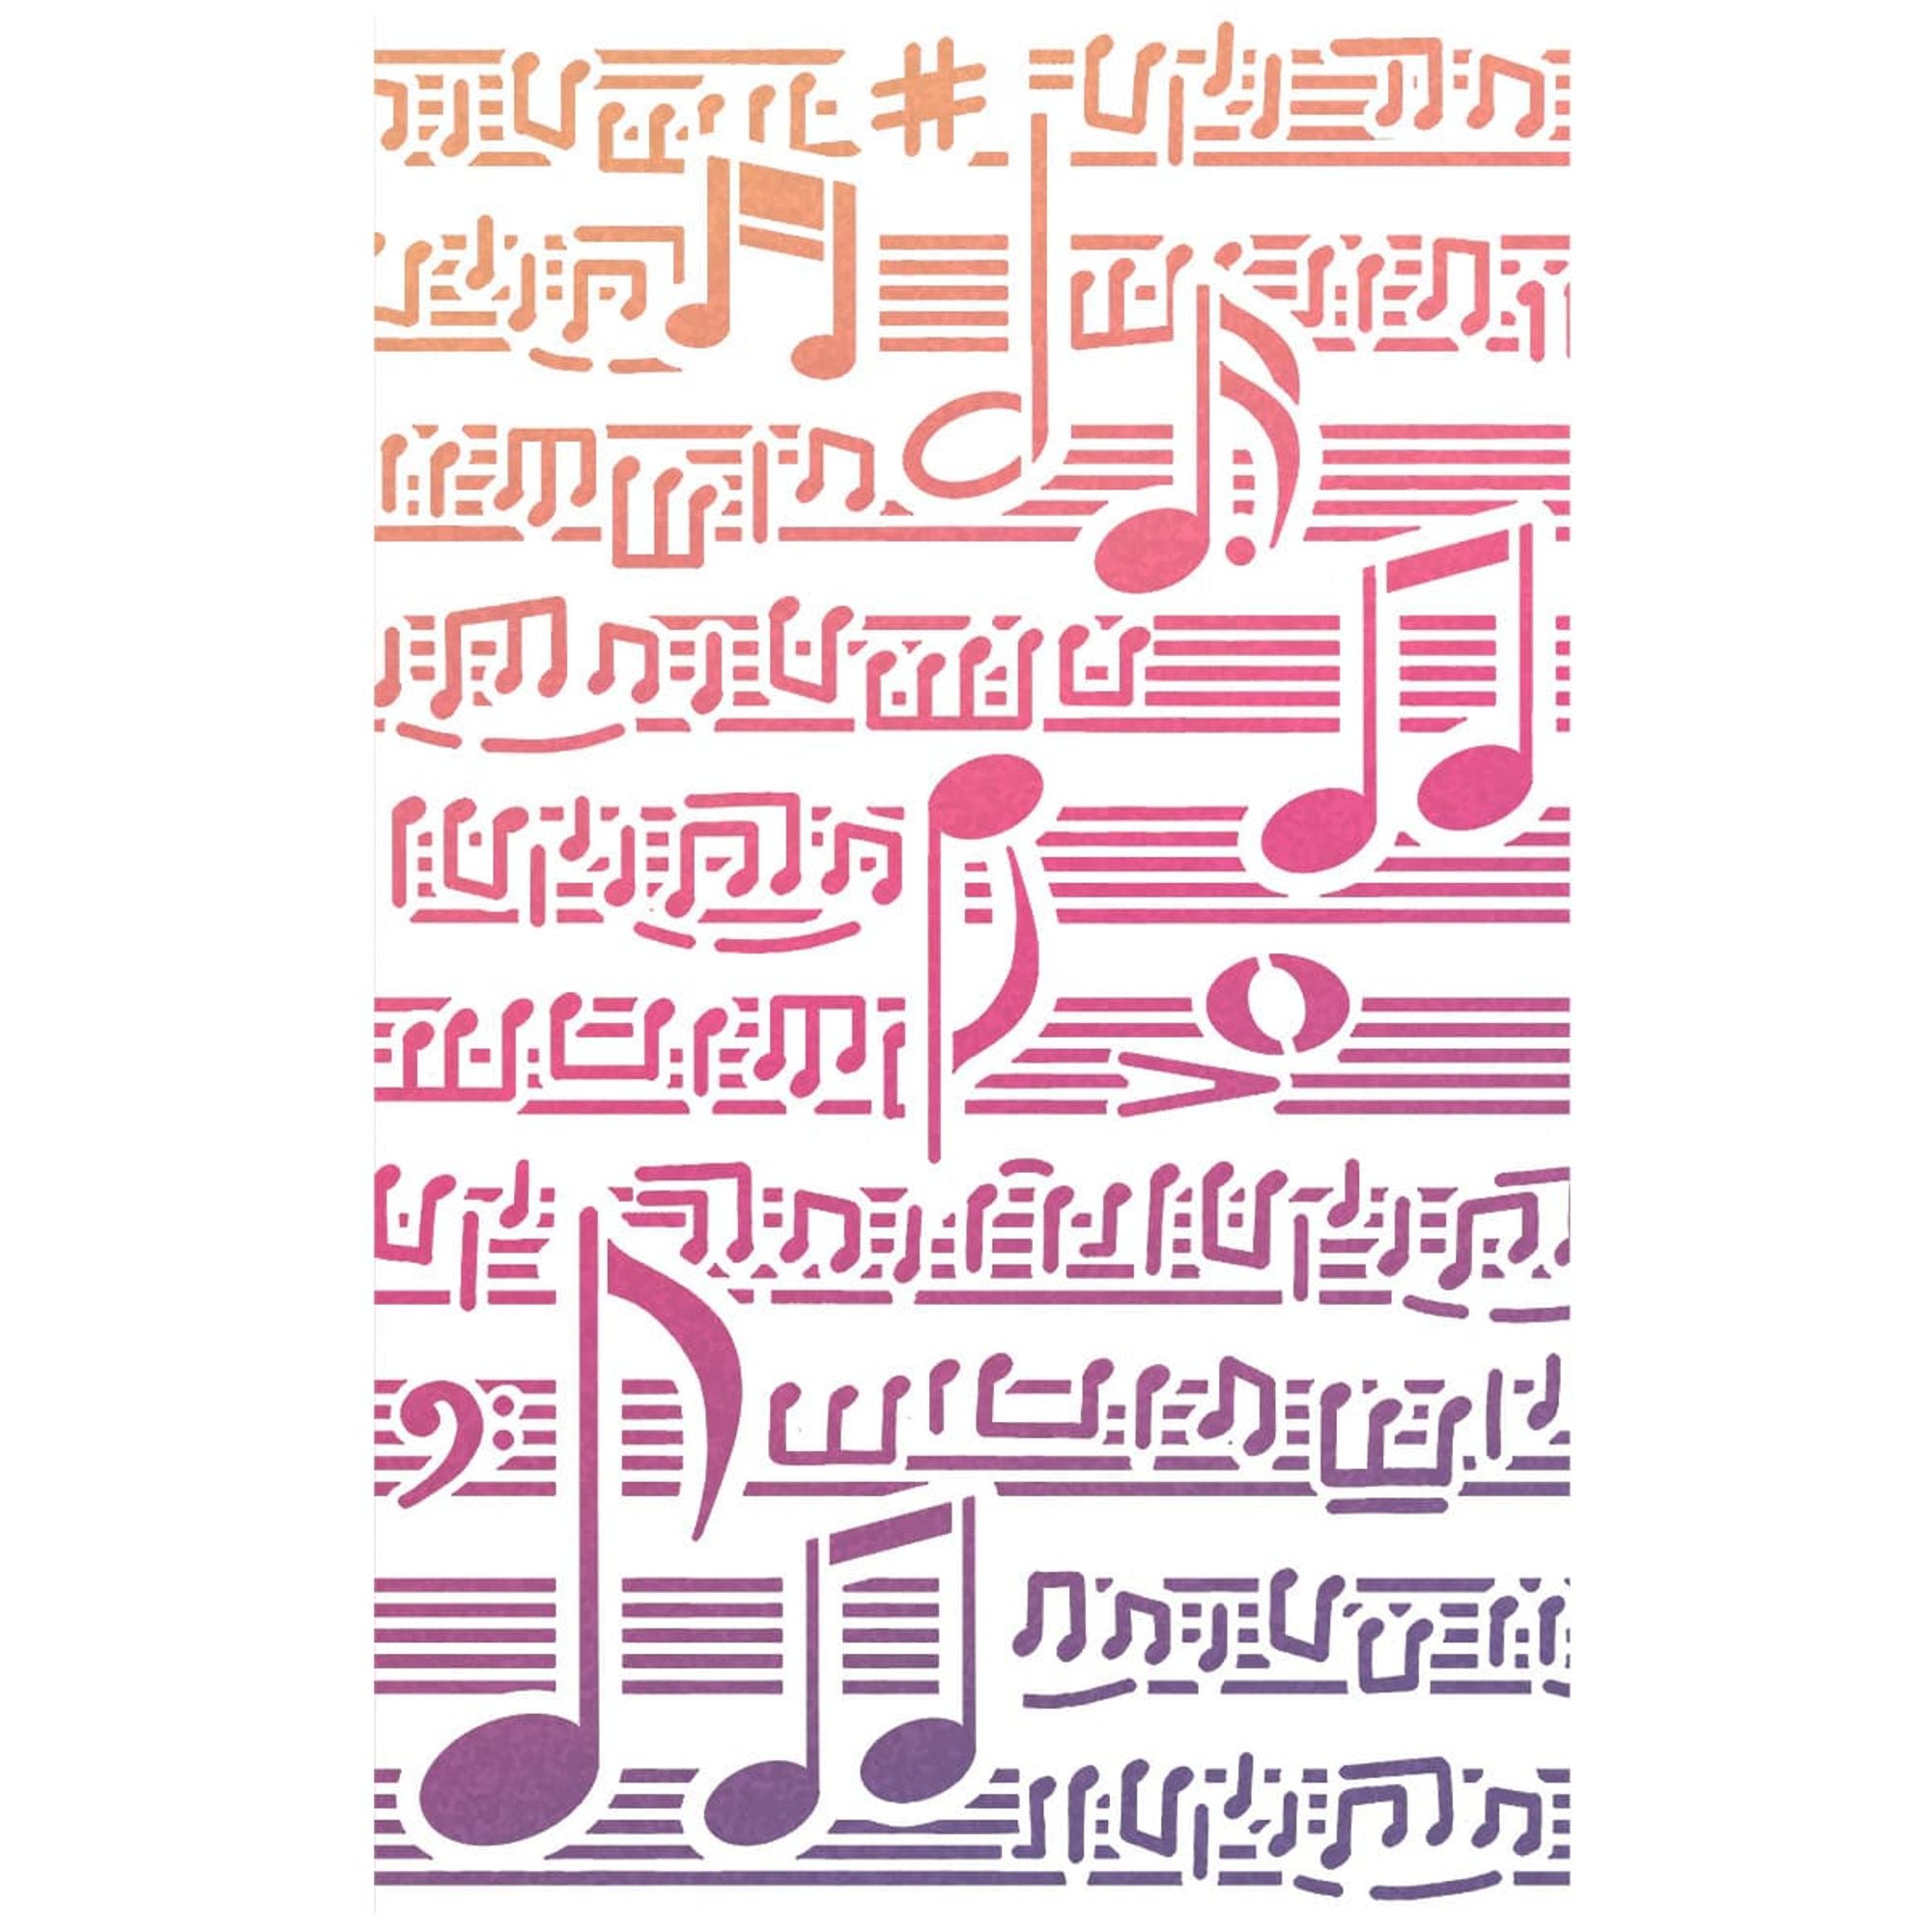 Ciao Bella Texture Stencil 5x8 Musical Score